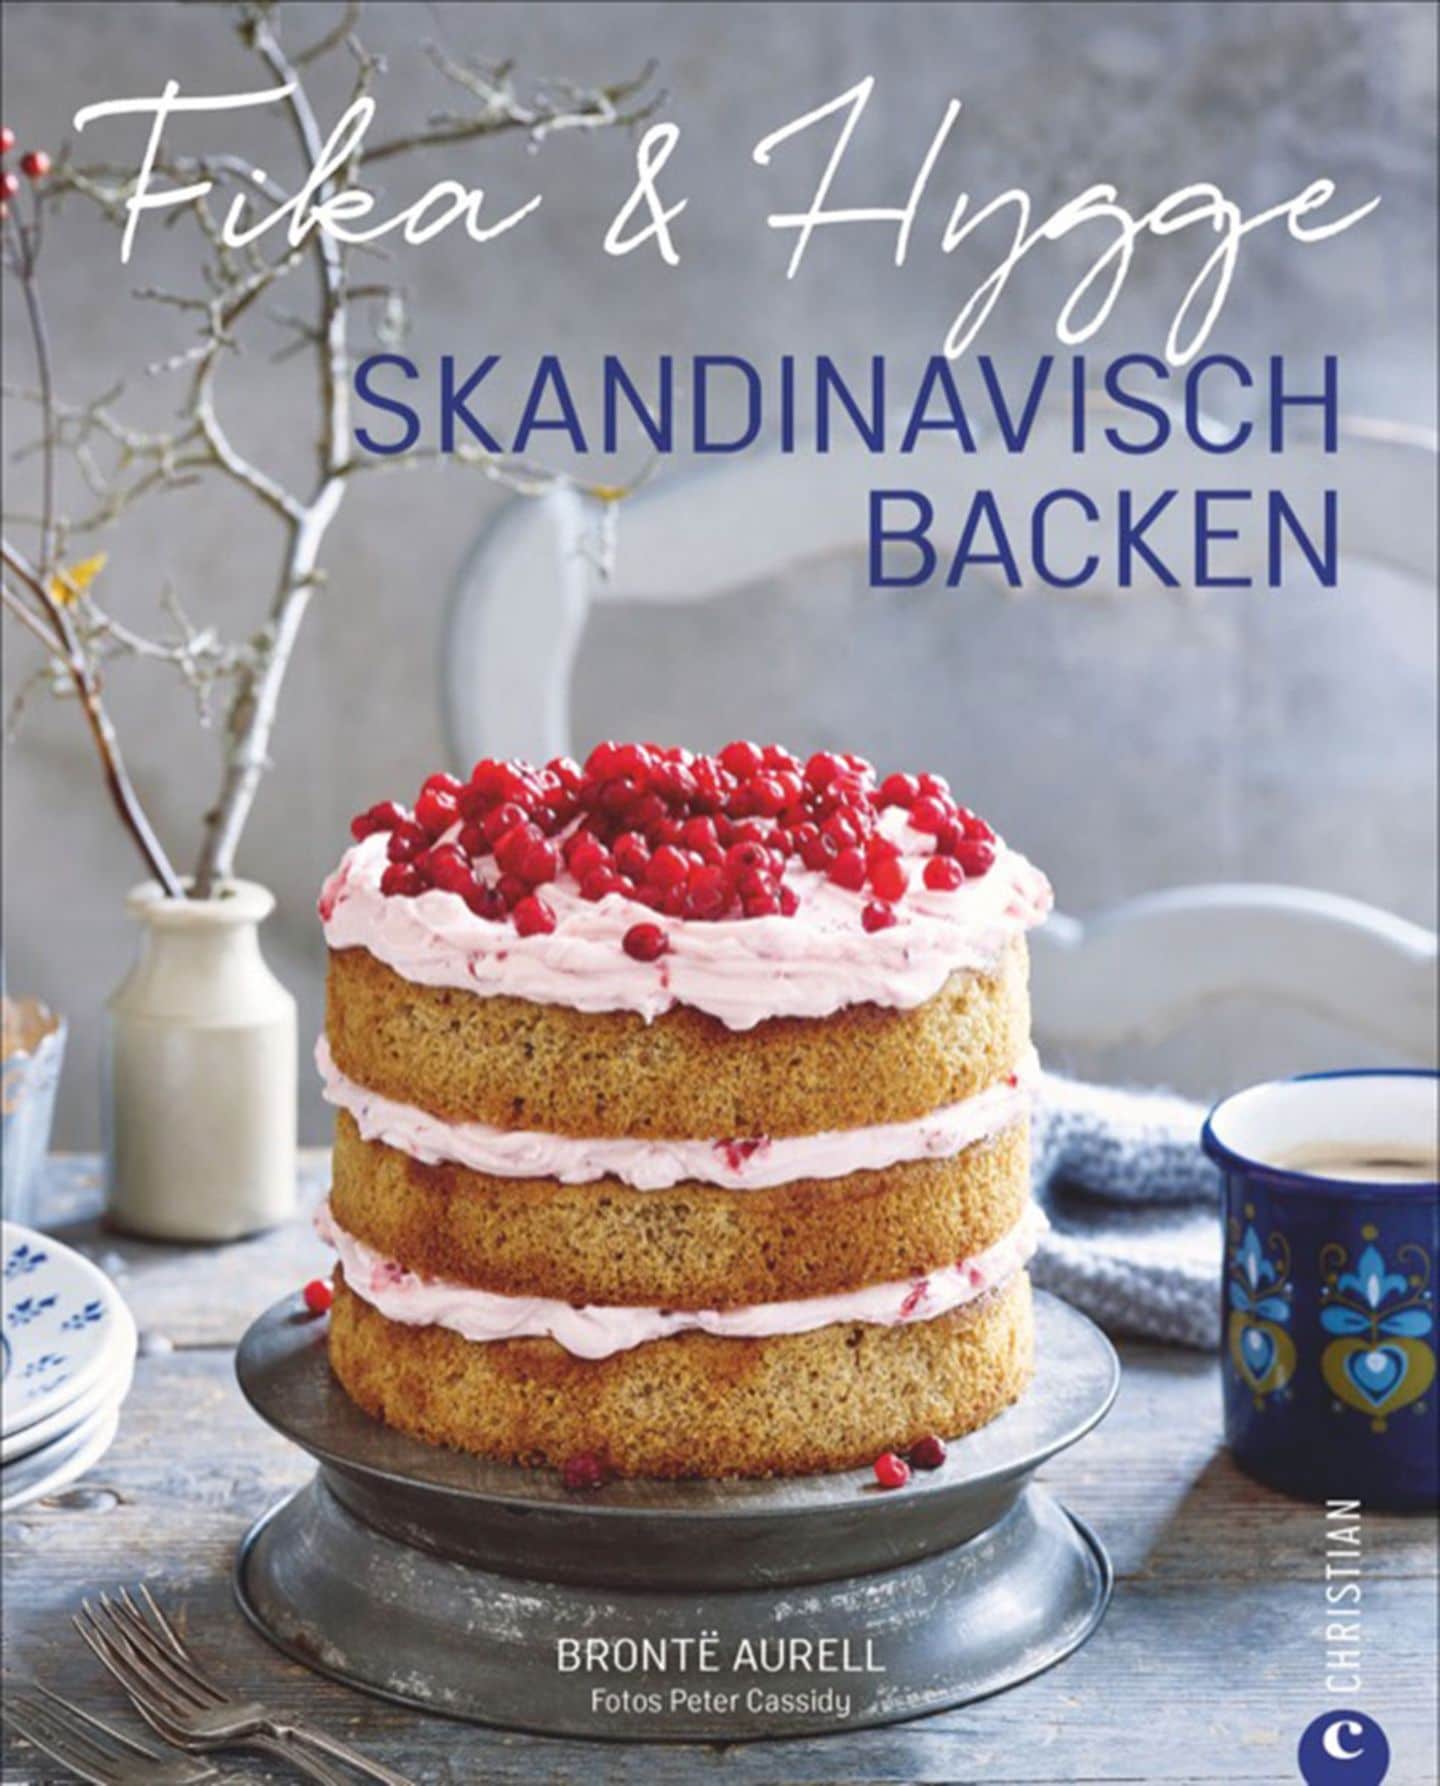 Kochbuch von Bronte Aurell "Skandinavisch backen"